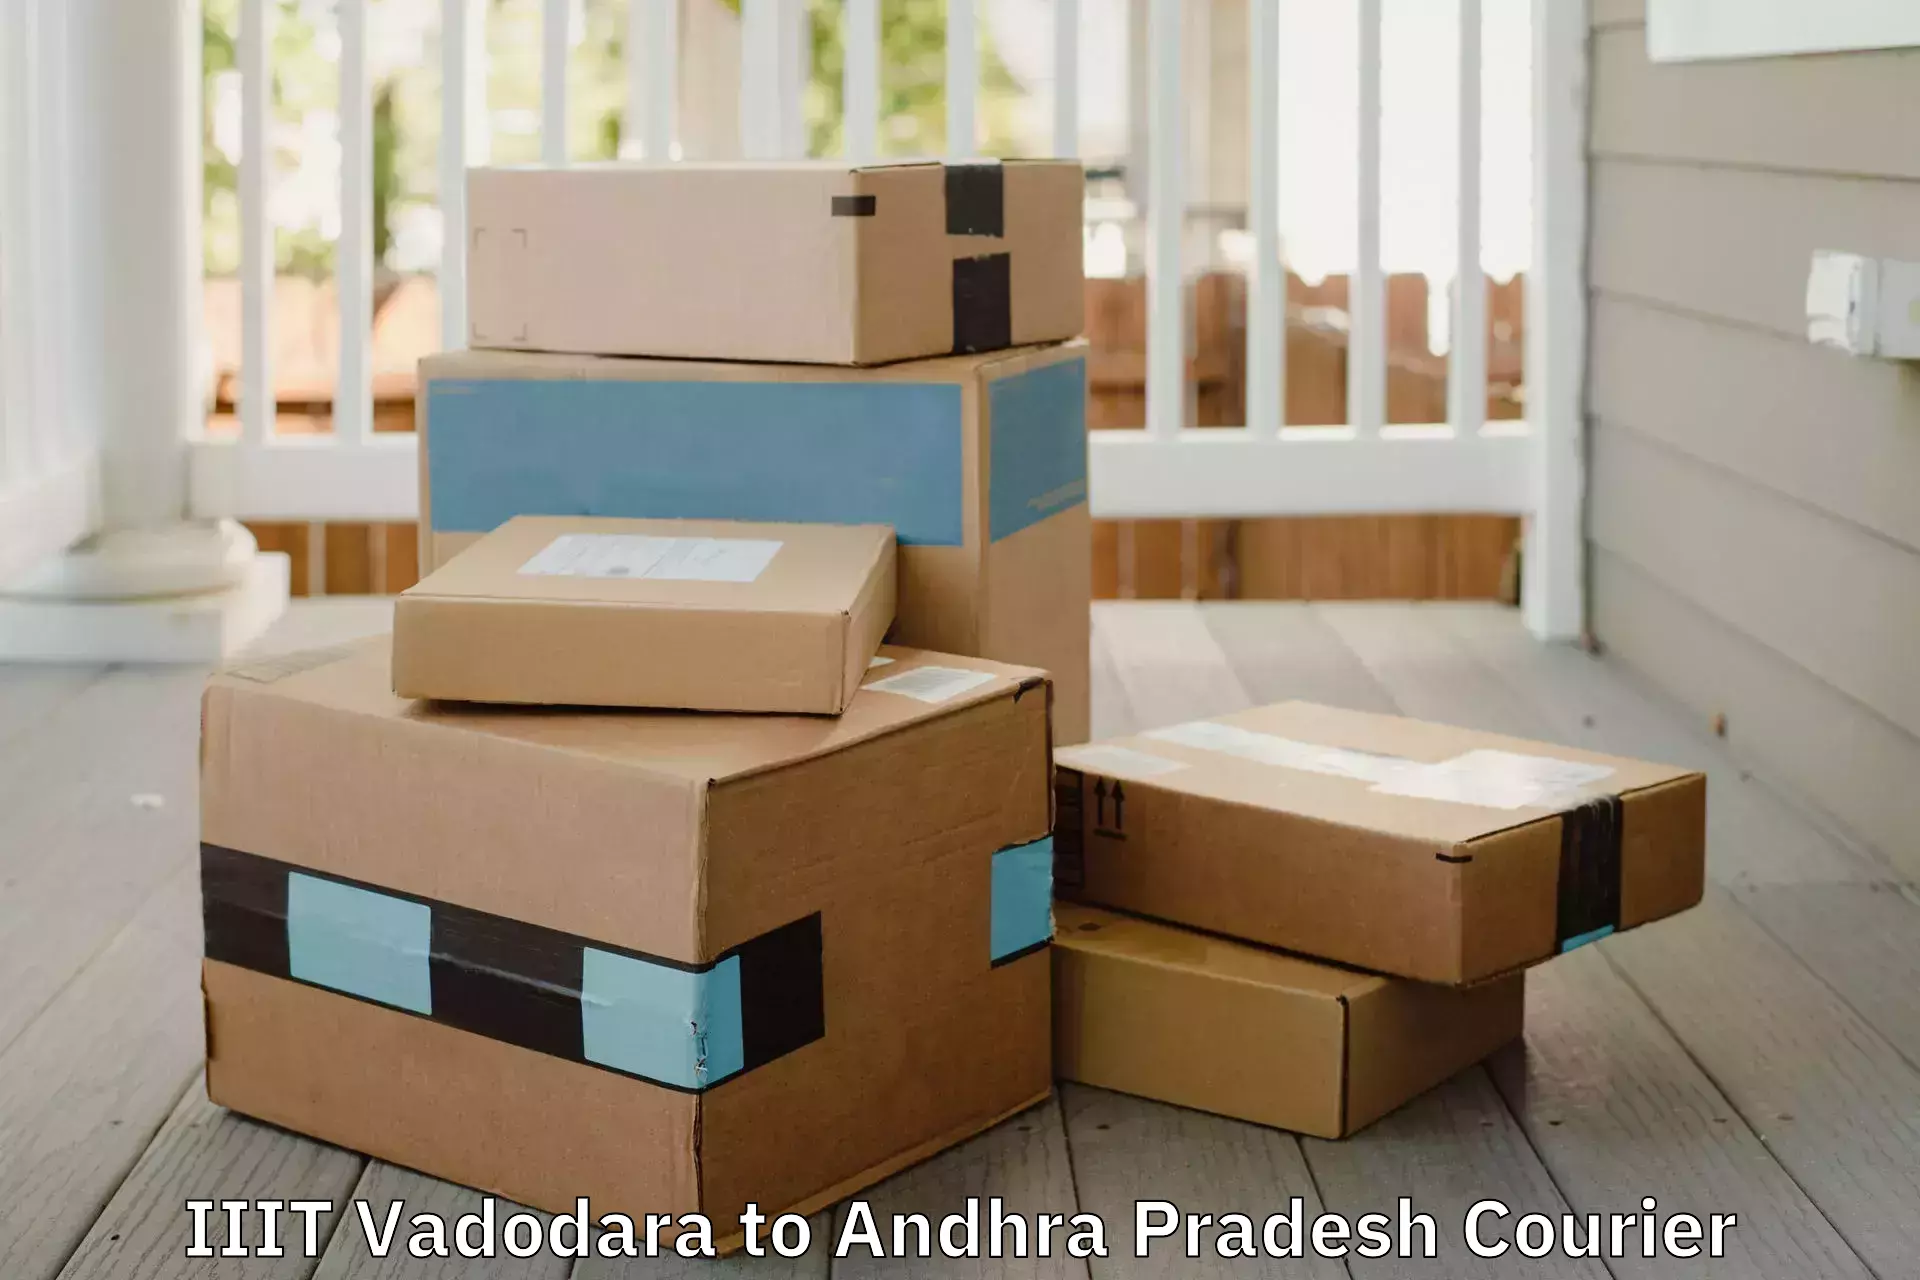 Nationwide furniture movers IIIT Vadodara to Kothapalli